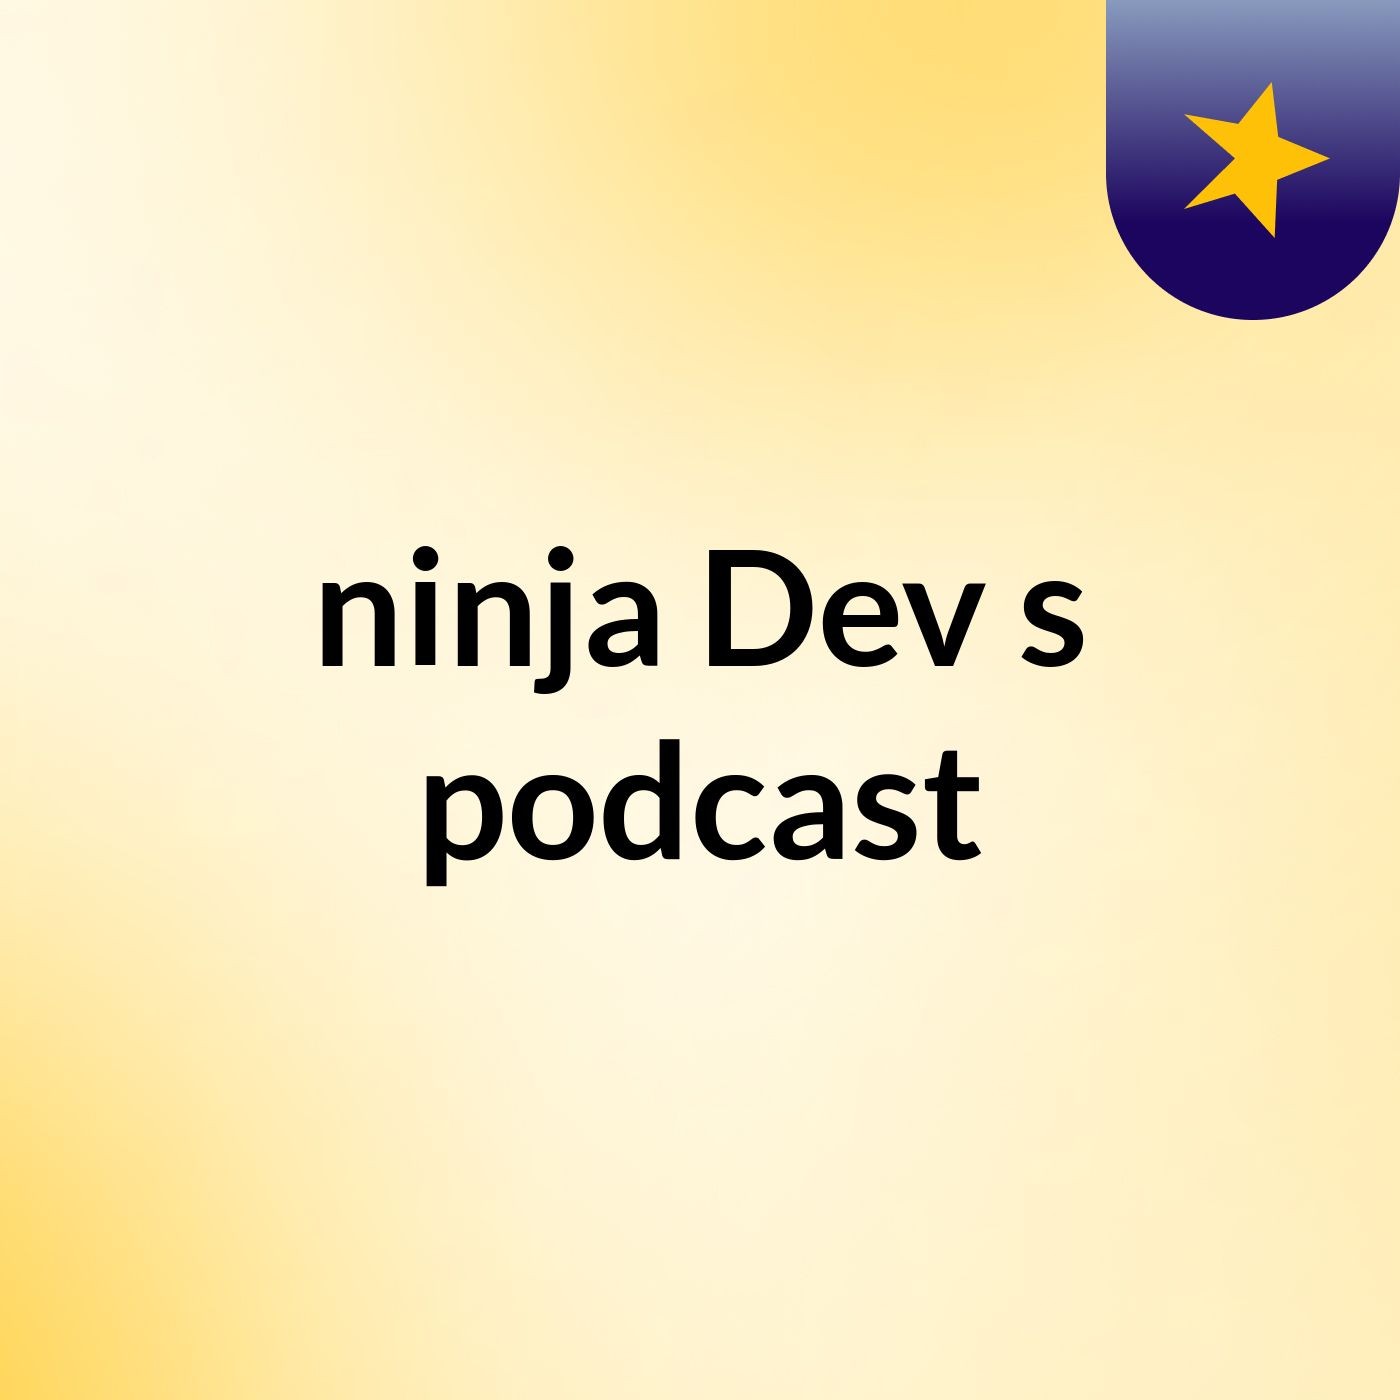 Episode 2 - ninja Dev's podcast